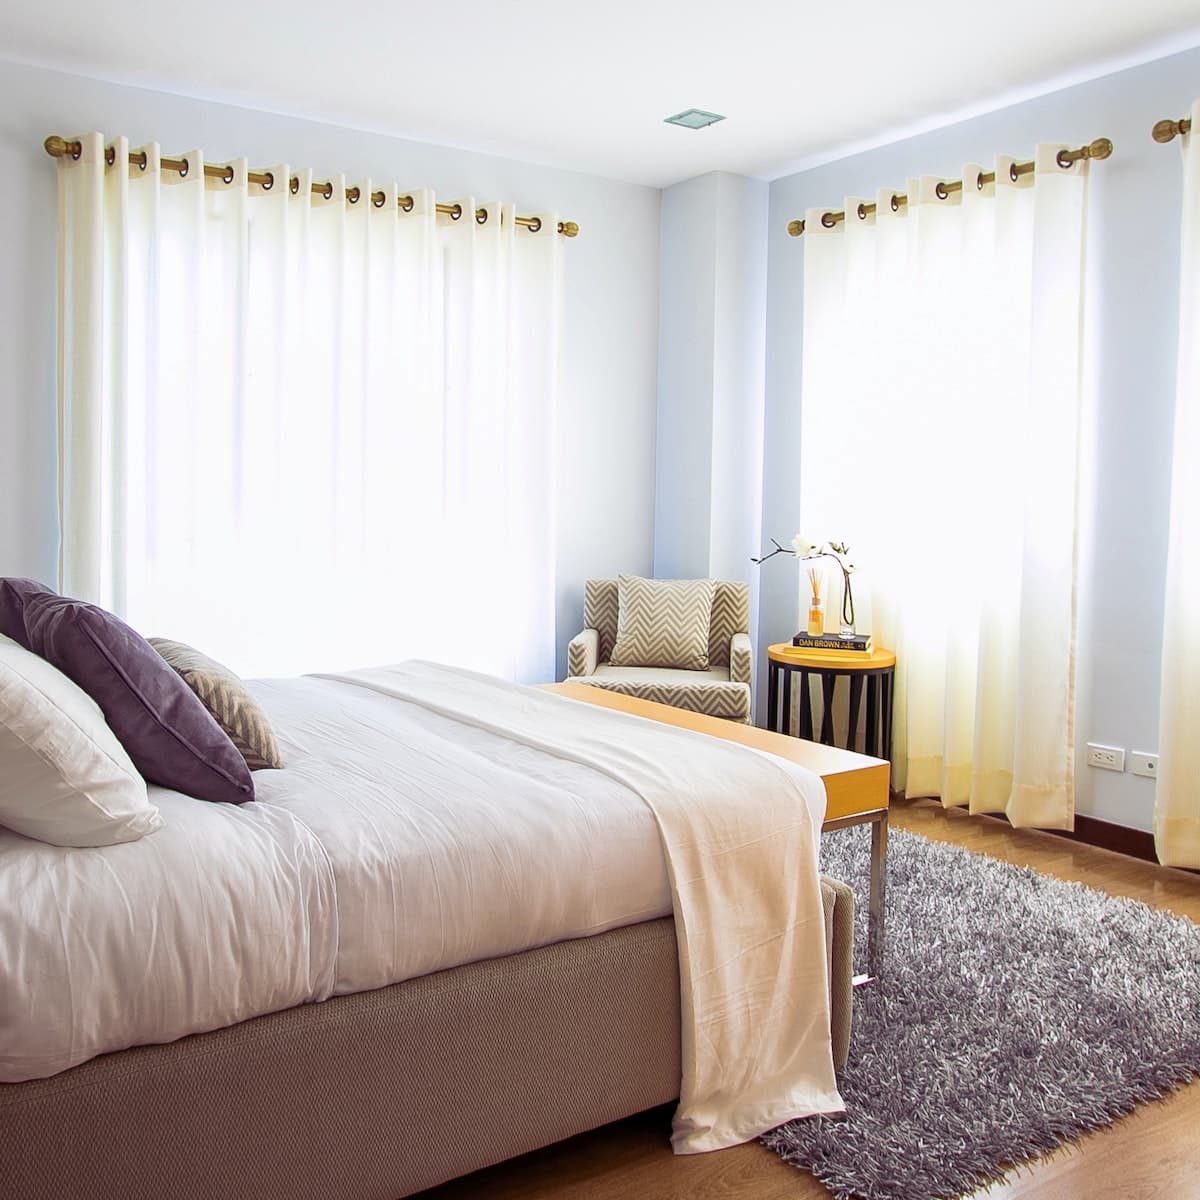 7 consigli di decorazione per migliorare la qualità del sonno. foto di M&W Studios.